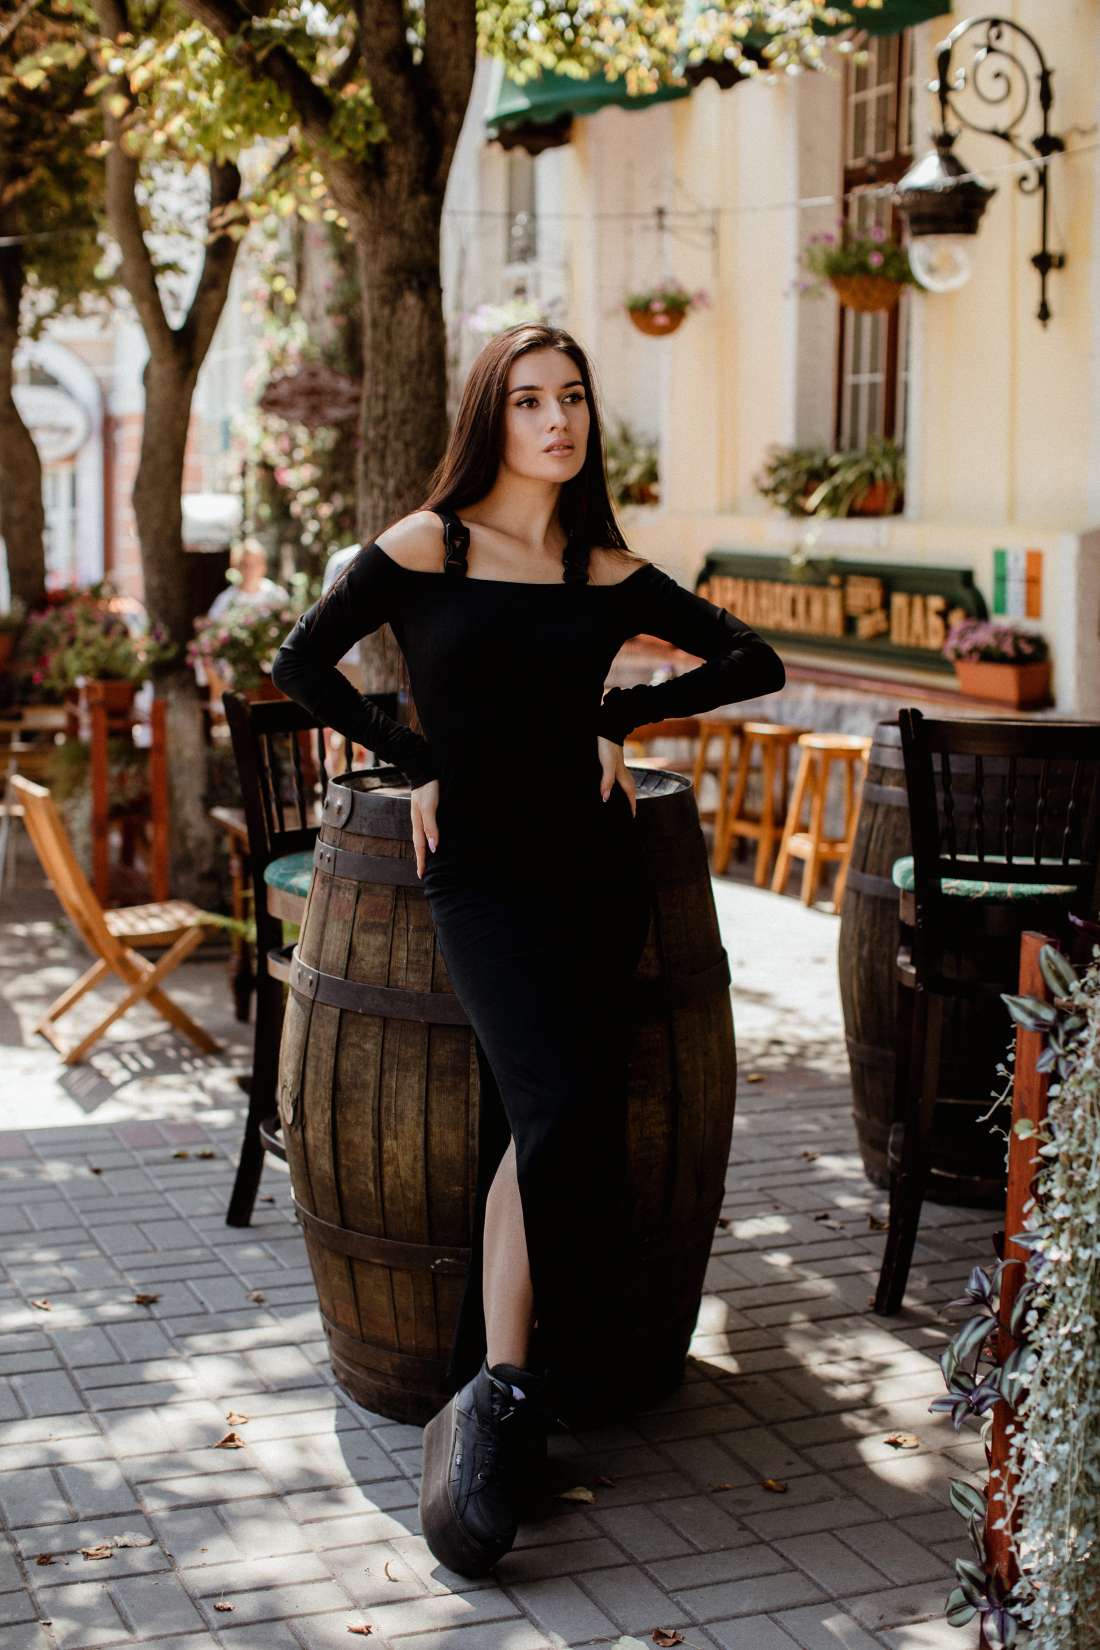 Длинное черное платье со стропами FLY купить в интернет-магазине SKVO